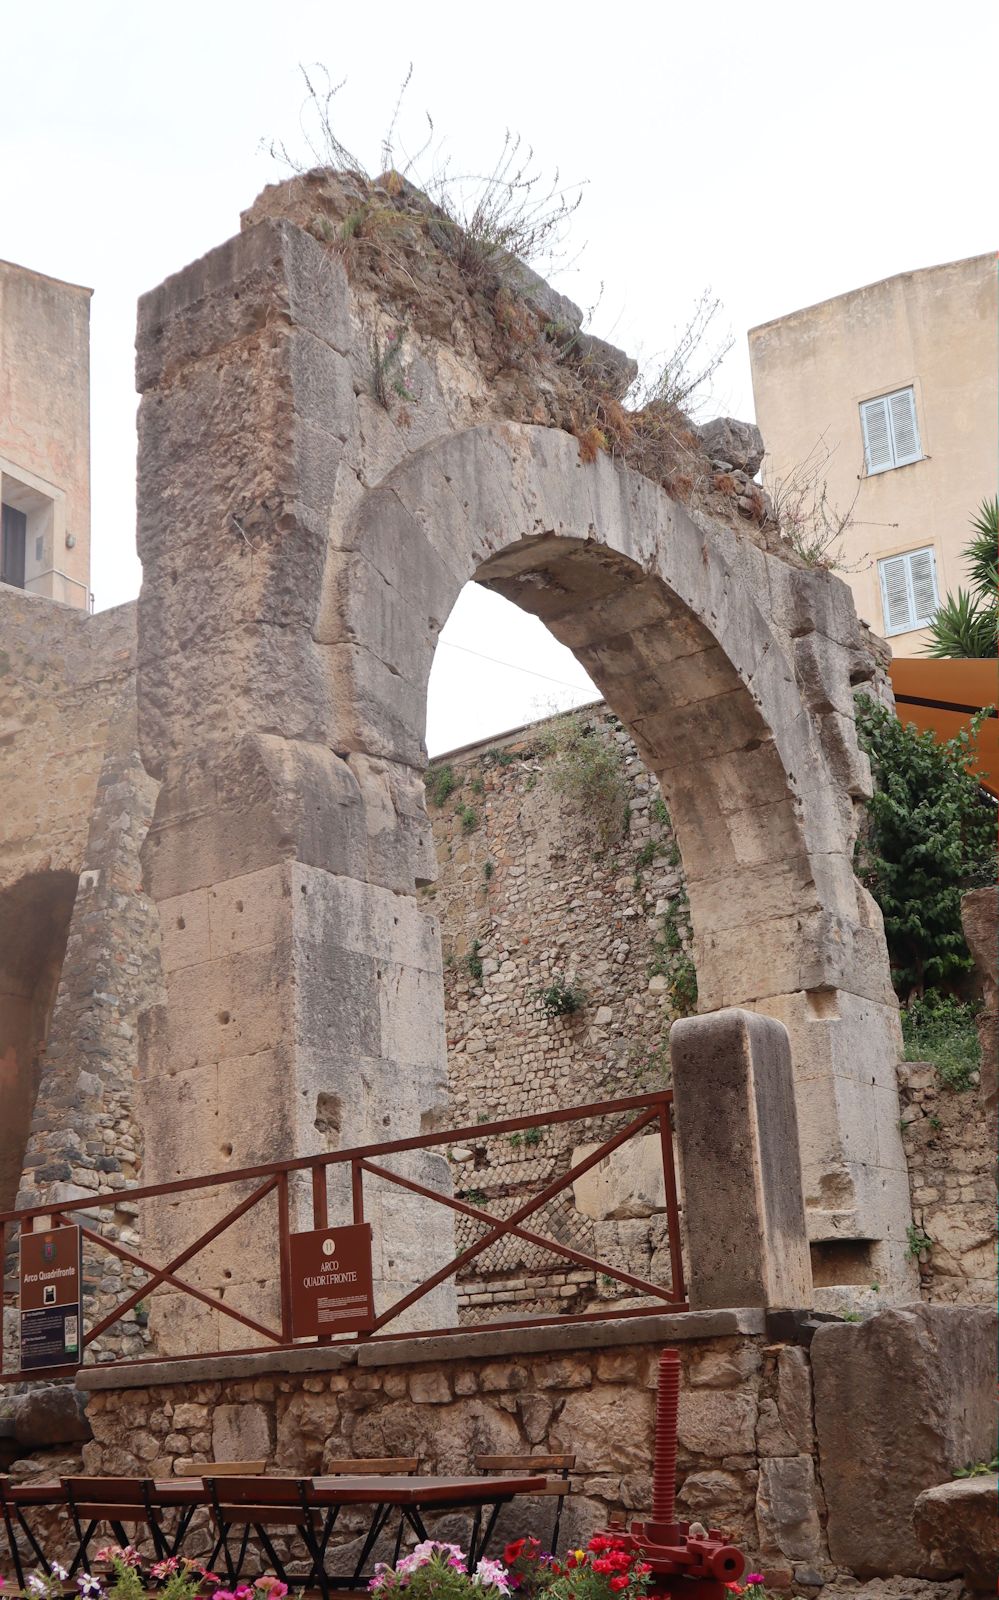 Tor zum einstigen römischen Forum in  in Terracina, wieder entdeckt, nachdem die darüber gebauten Häuser 1944 durch Bomben zerstört wurden